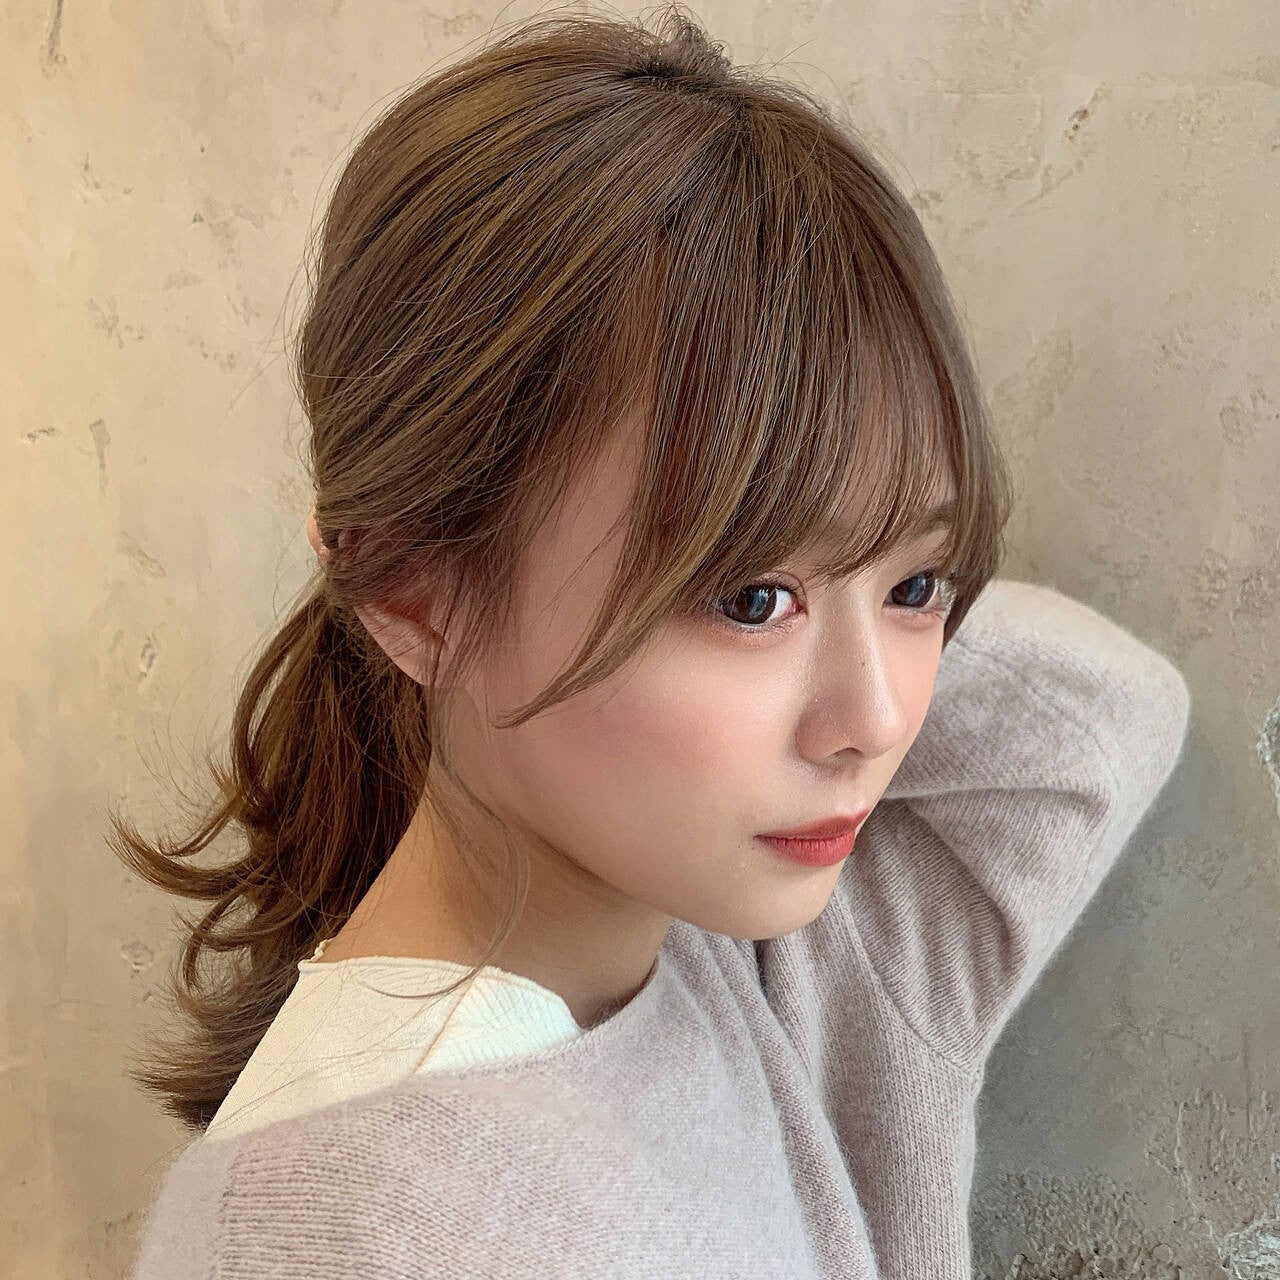 21年 ネクストブレイクの予感 川口春奈さんのヘアに注目 モデルプレス